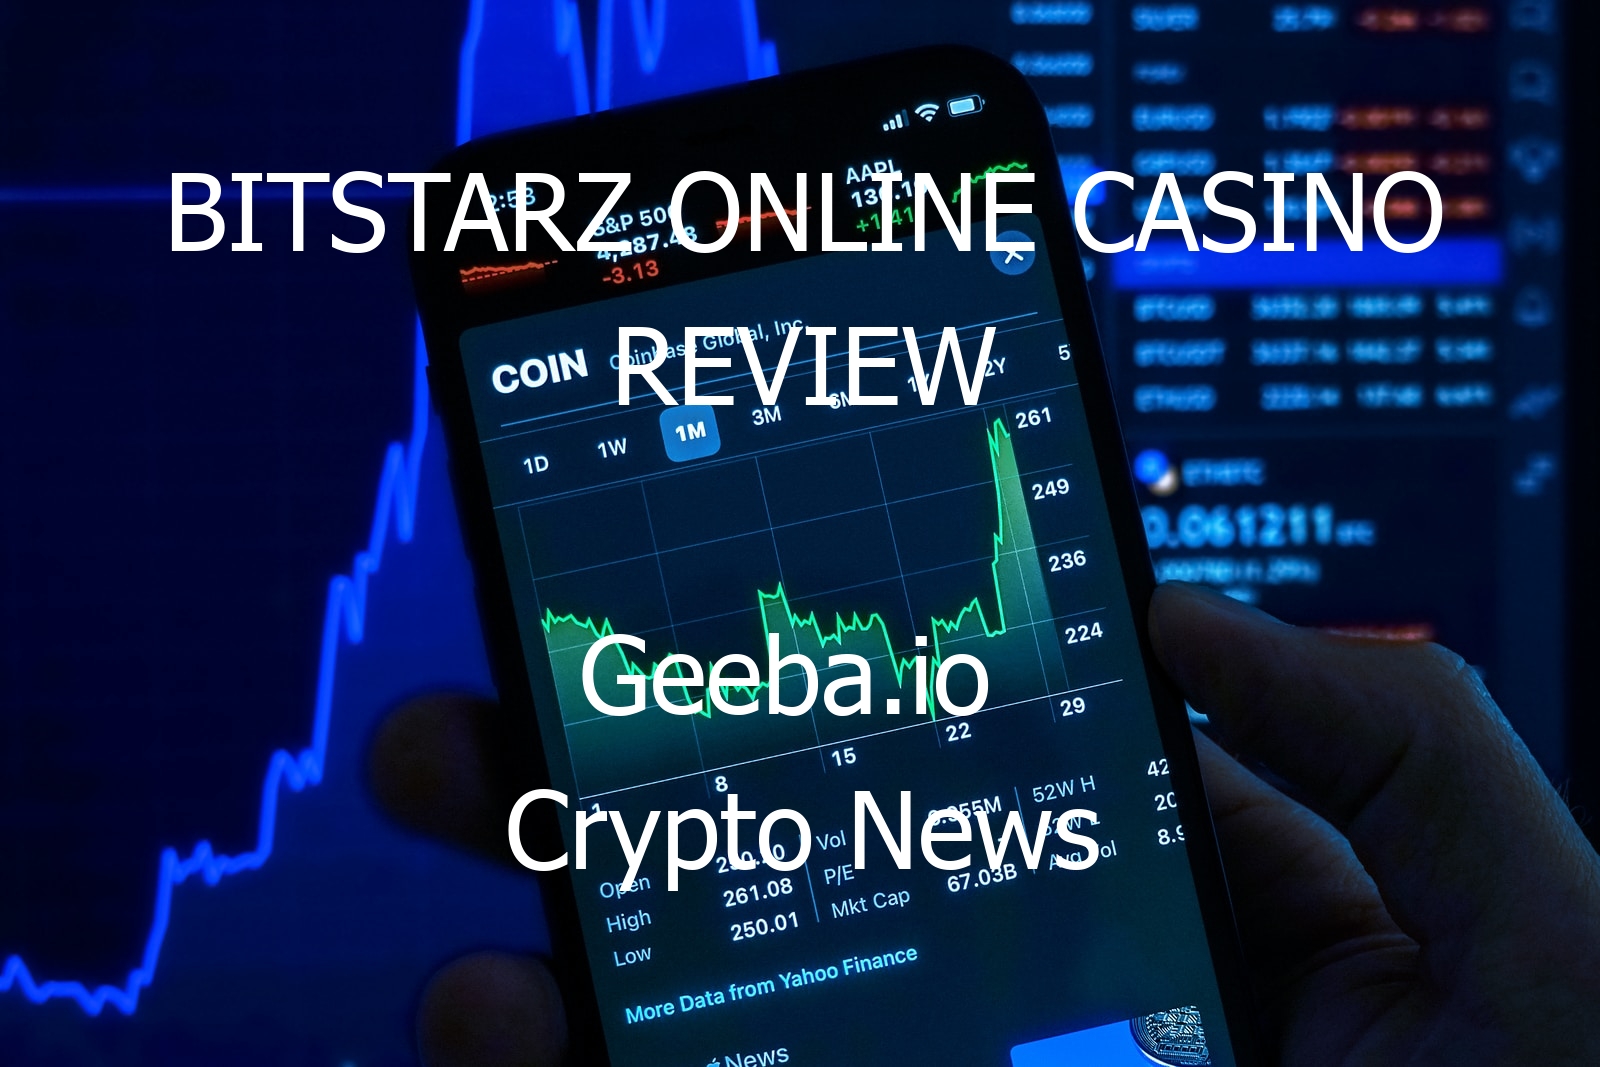 bitstarz online casino review 13871